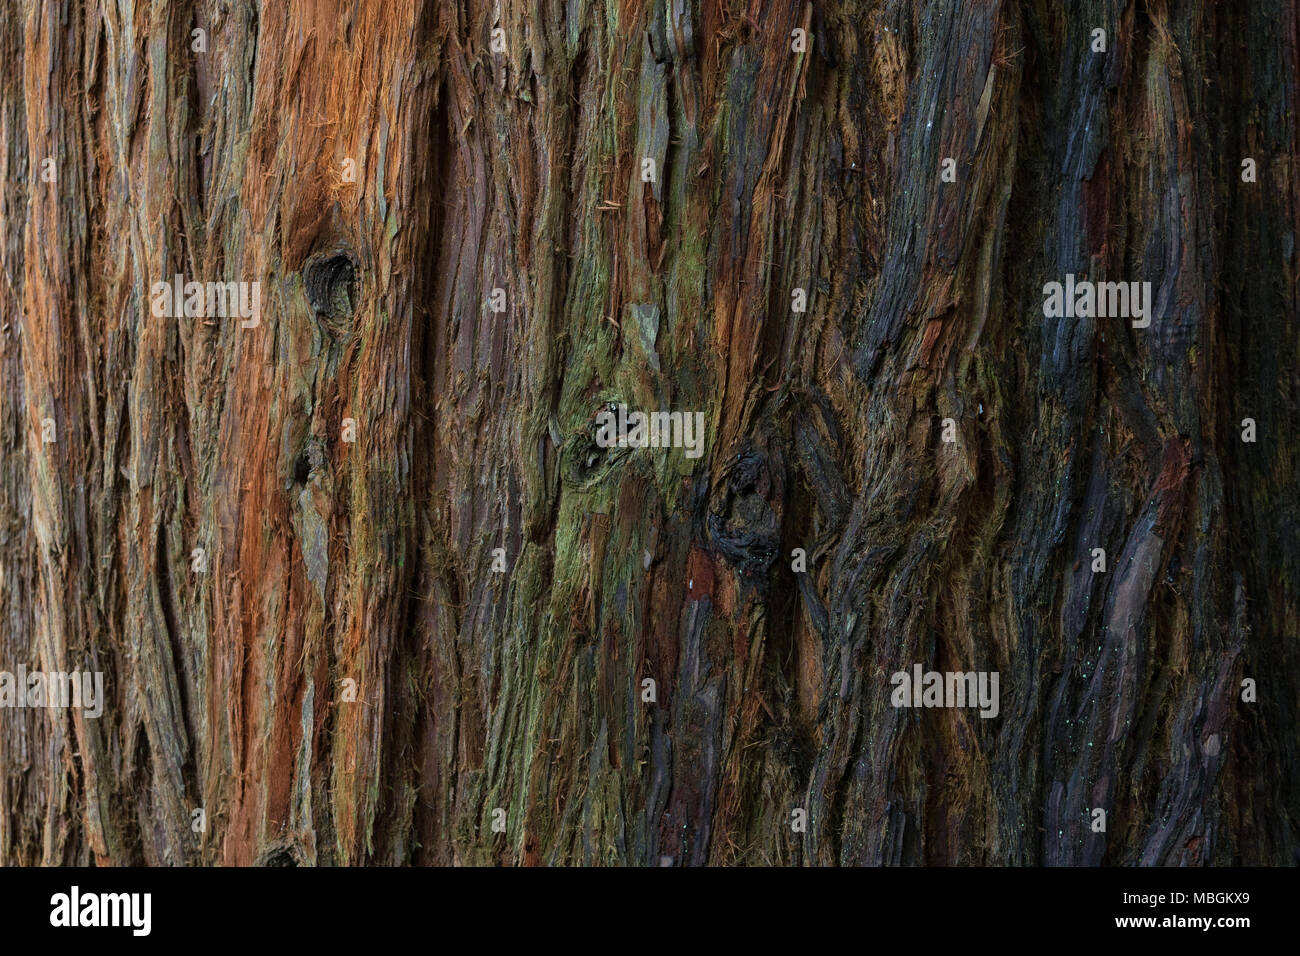 west coast redwood, Bark of trees close-up Stock Photo